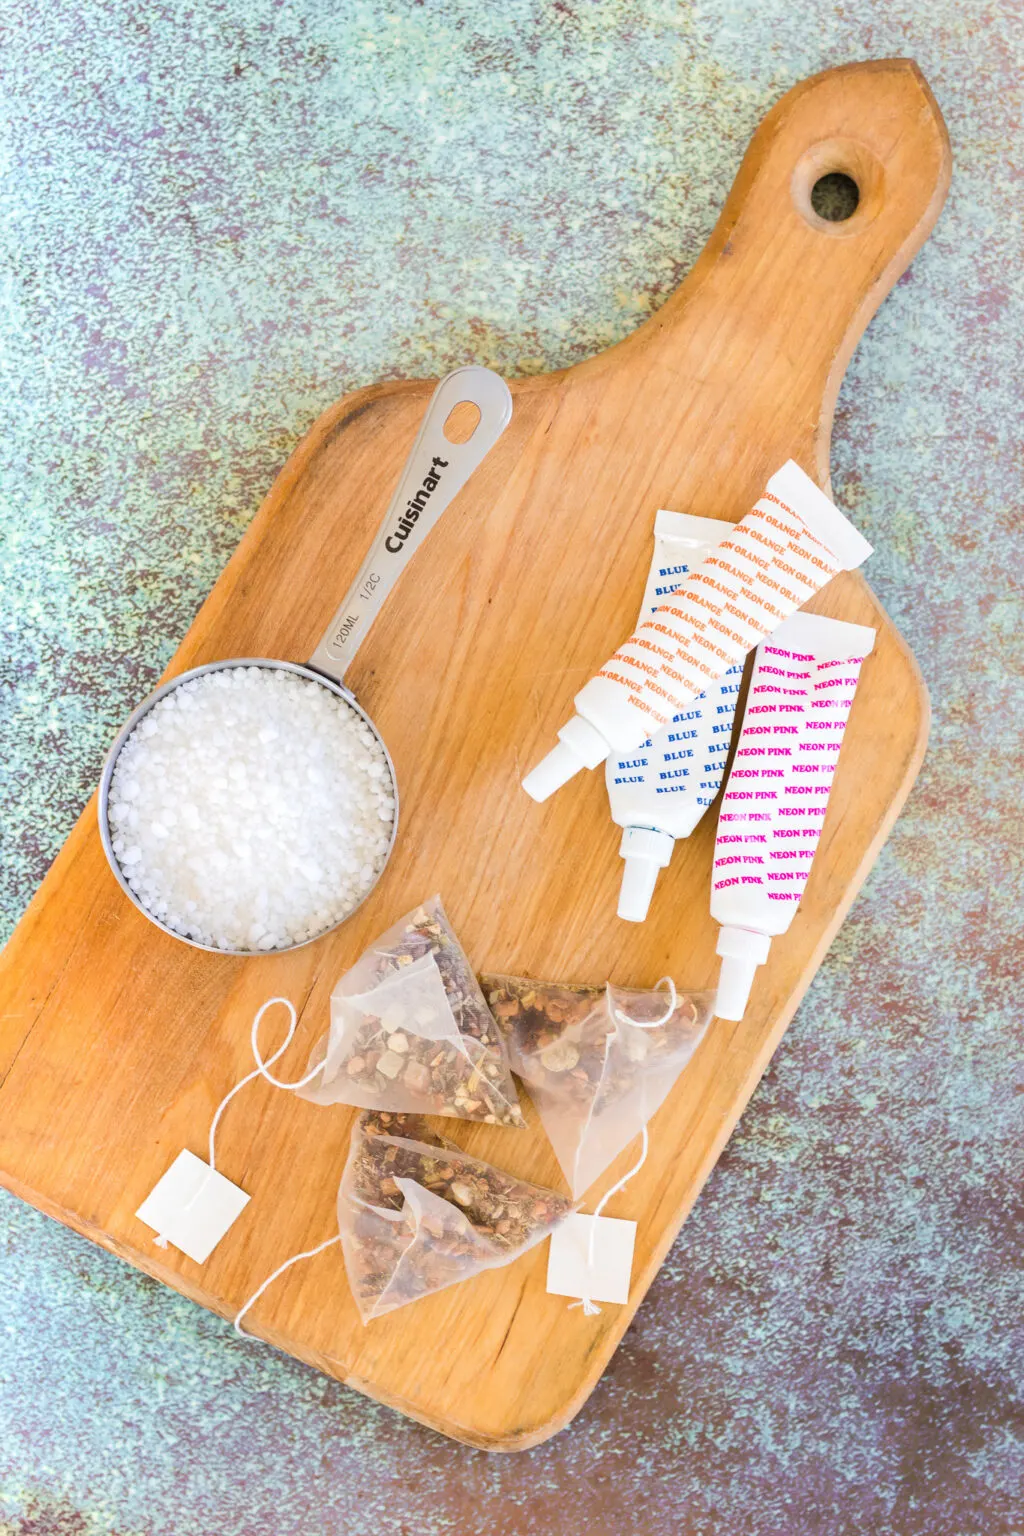 tea bomb ingredients on table